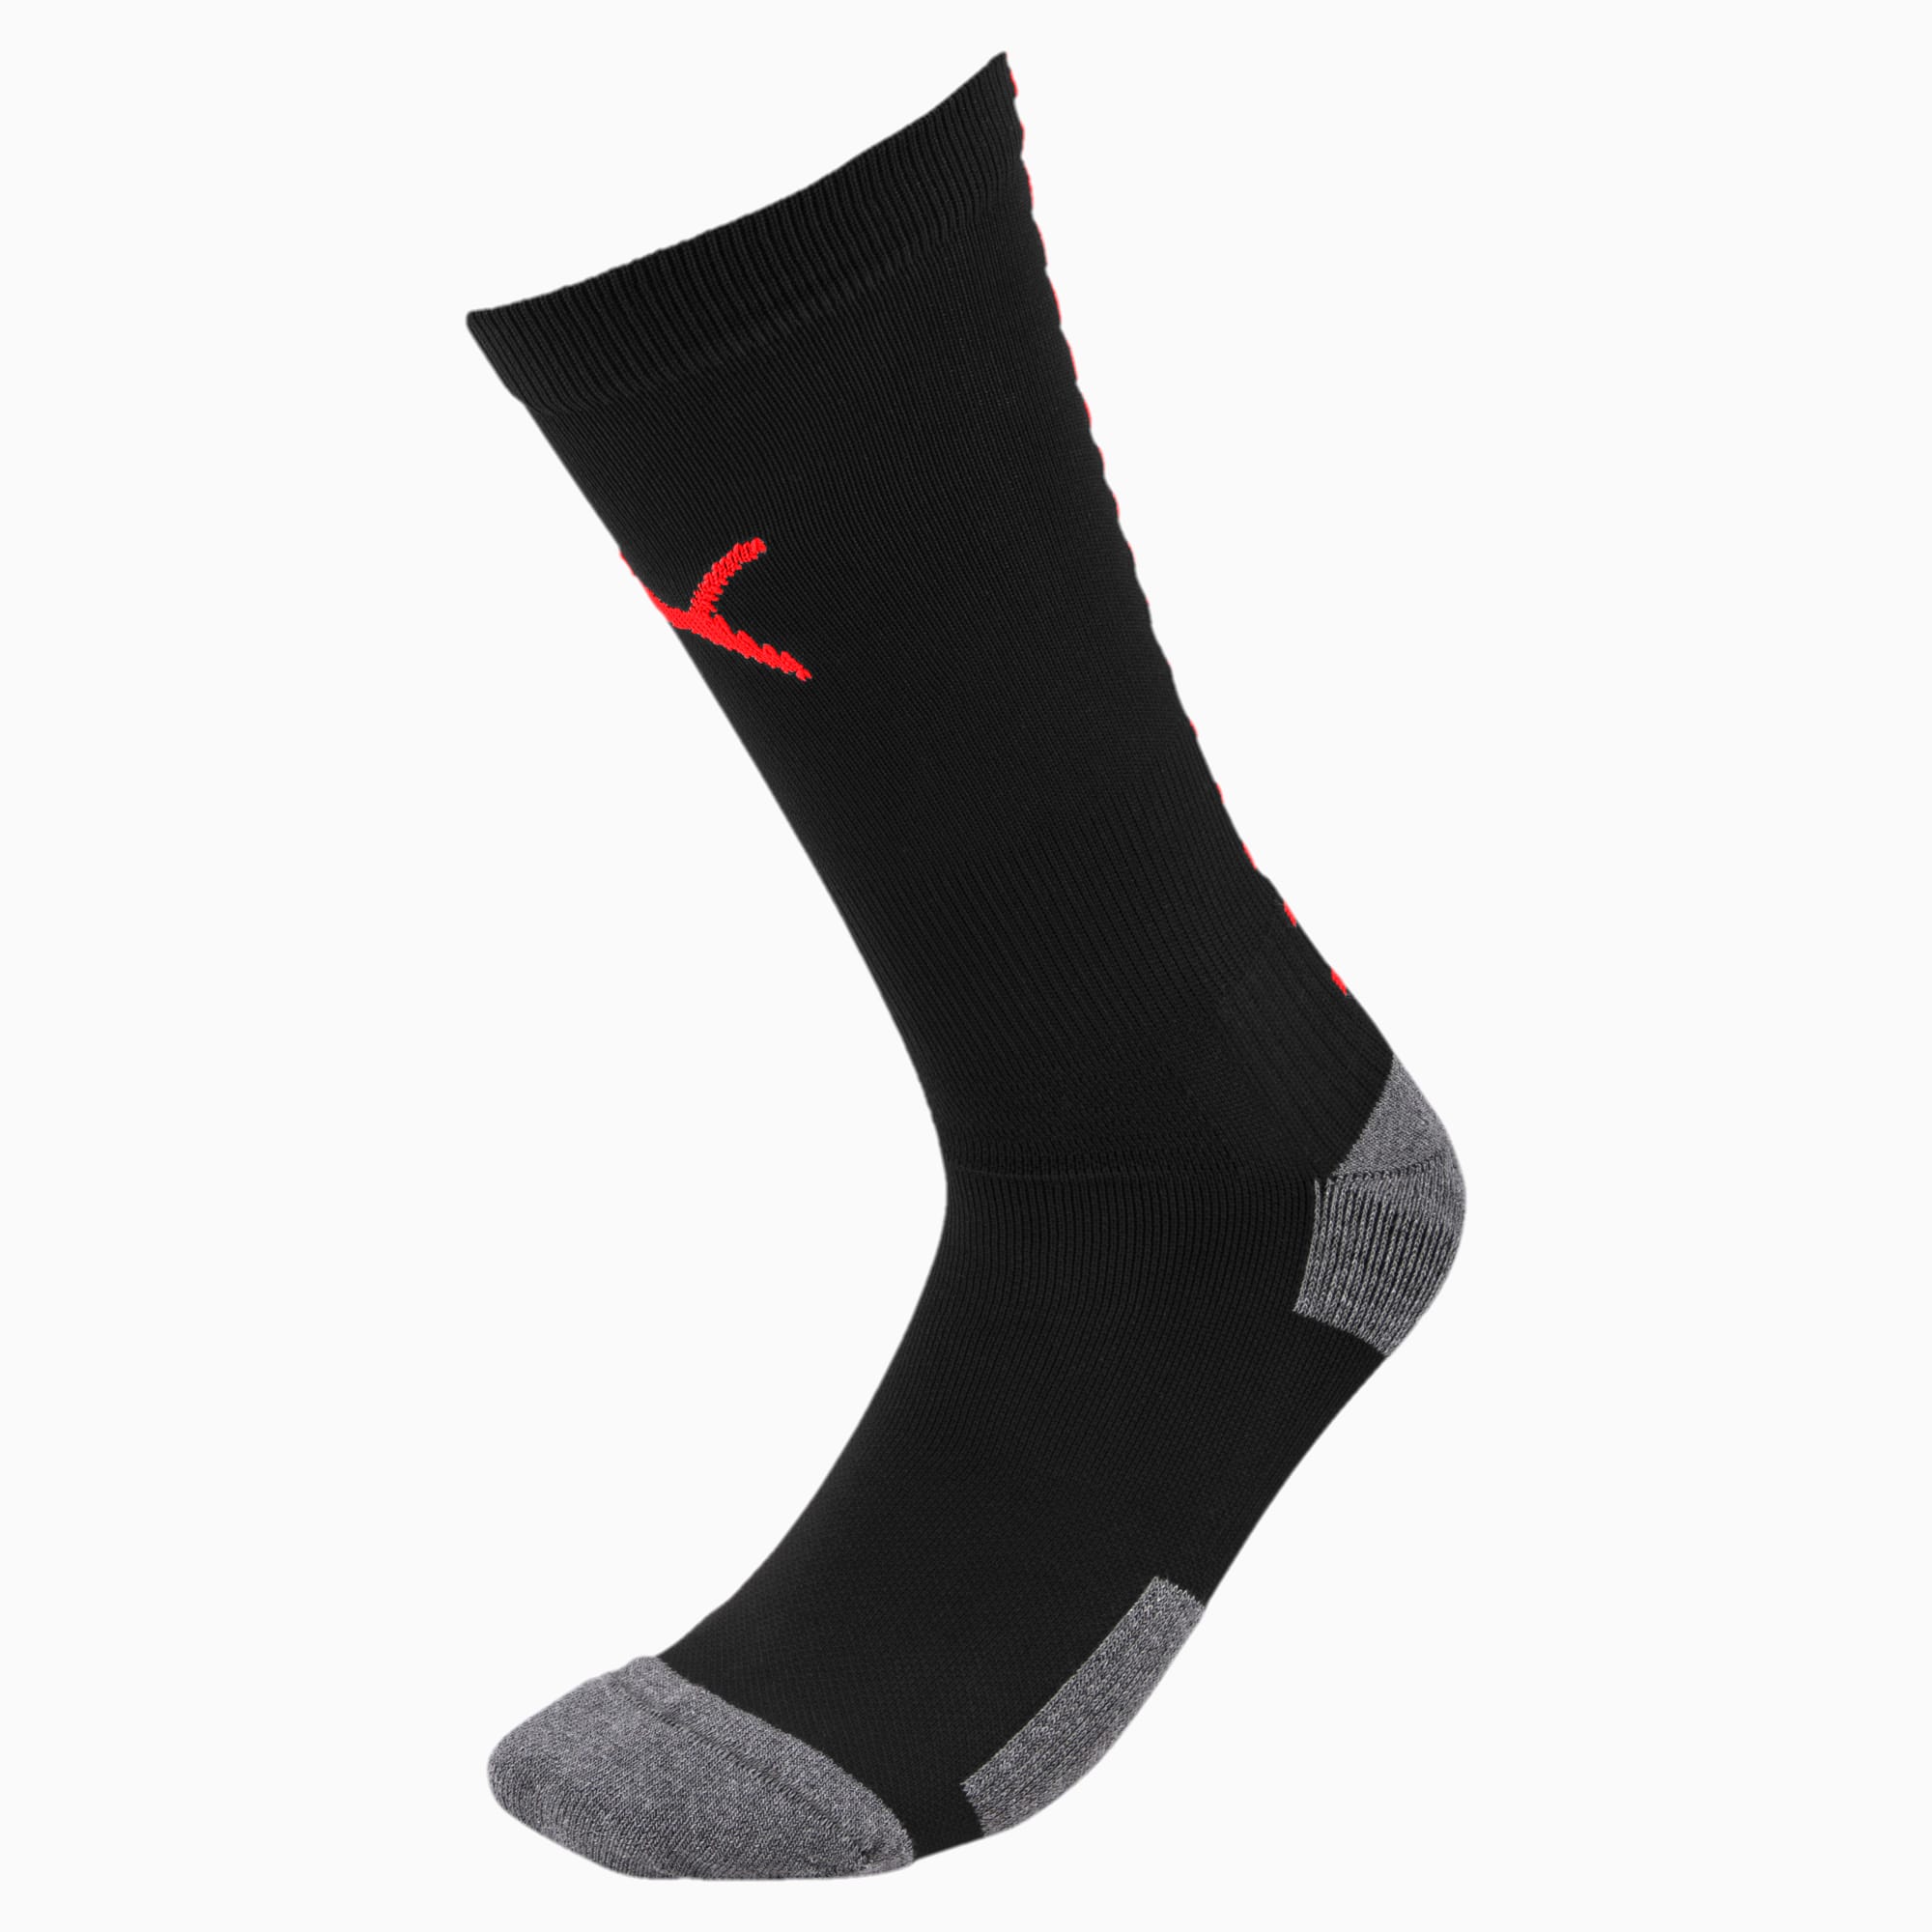 puma black football socks